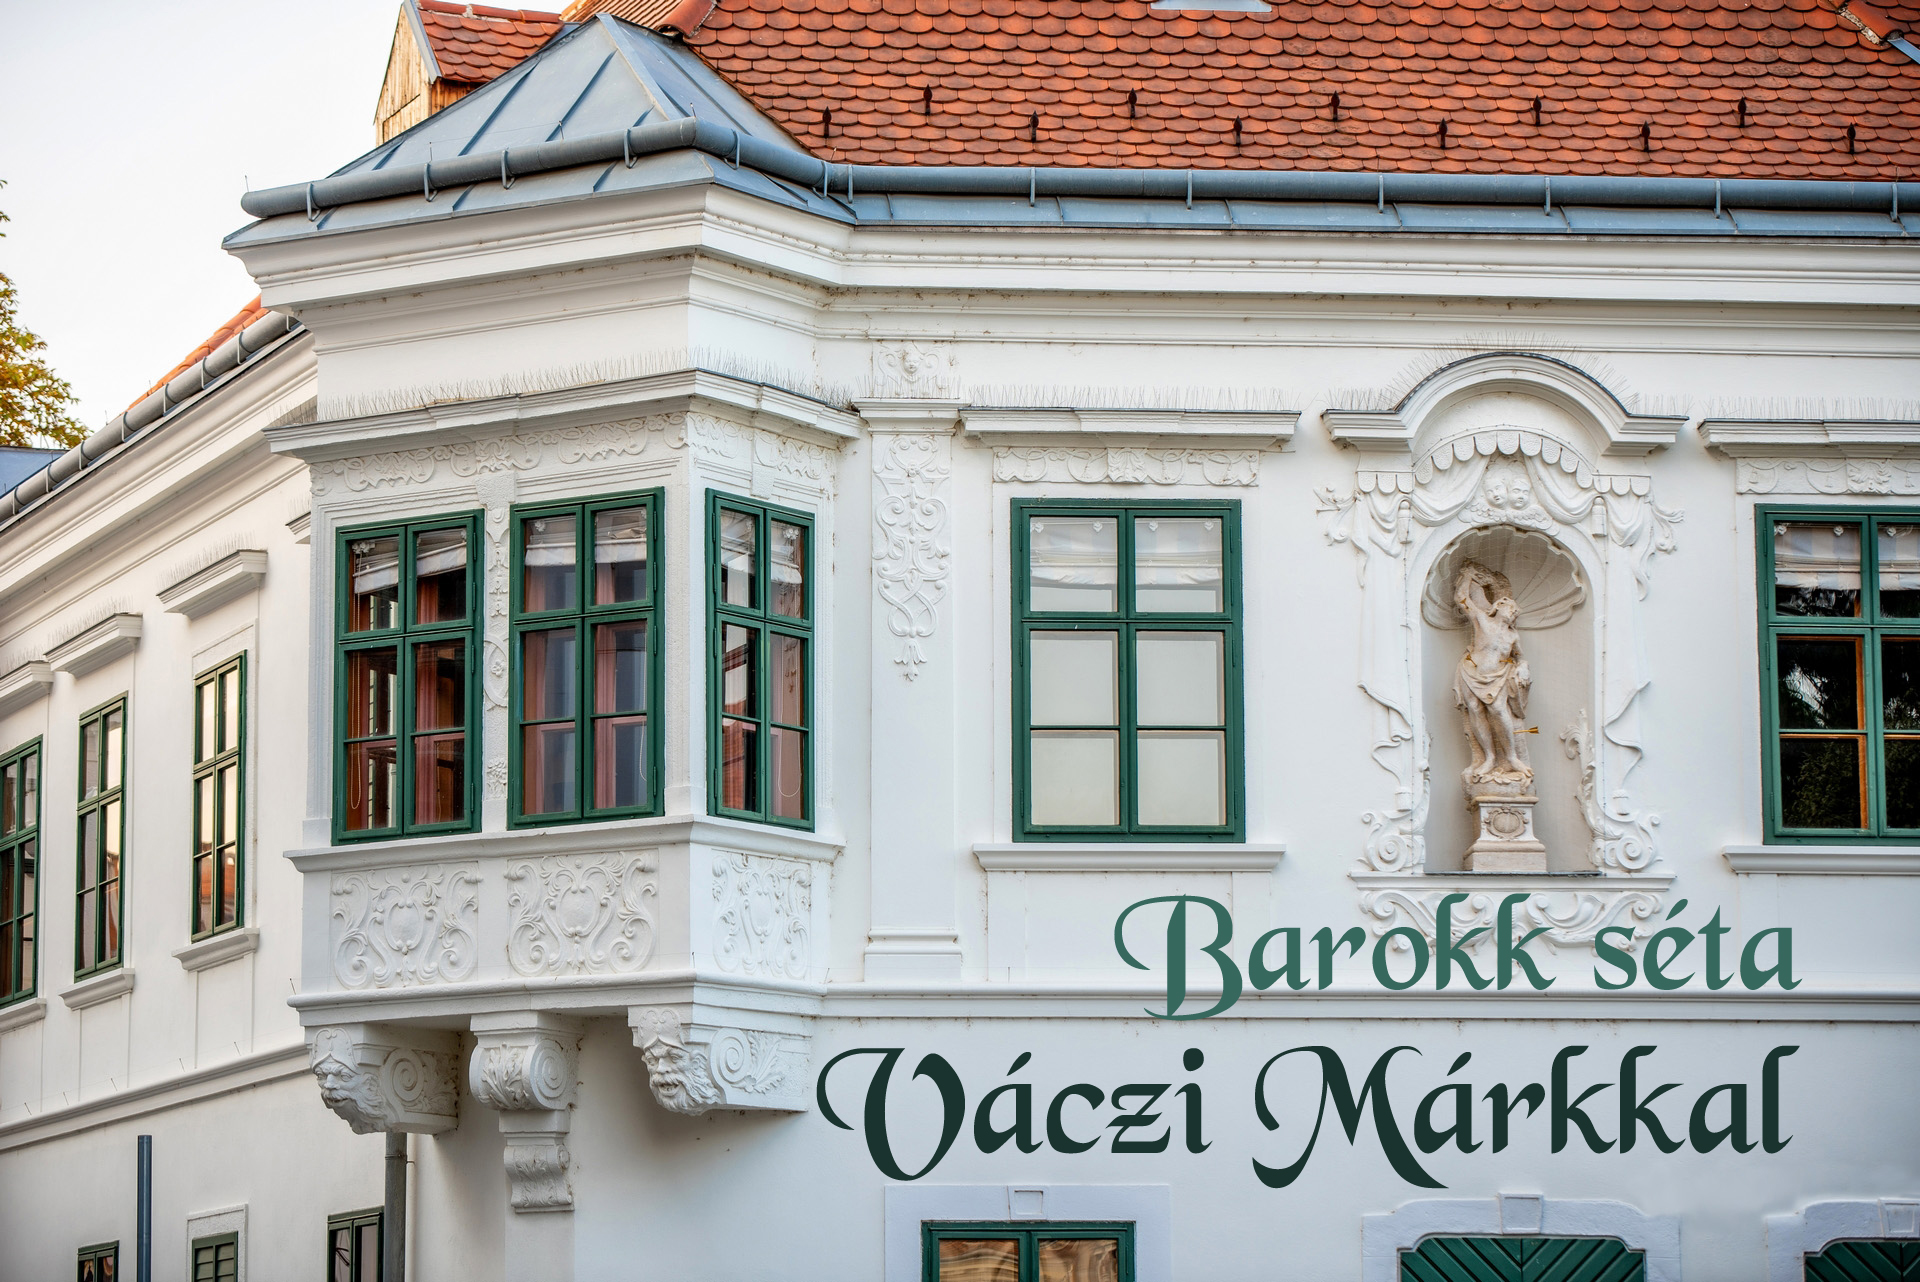 Barokk séta lesz hétvégén a Belvárosban  Váczi Márk várostörténésszel